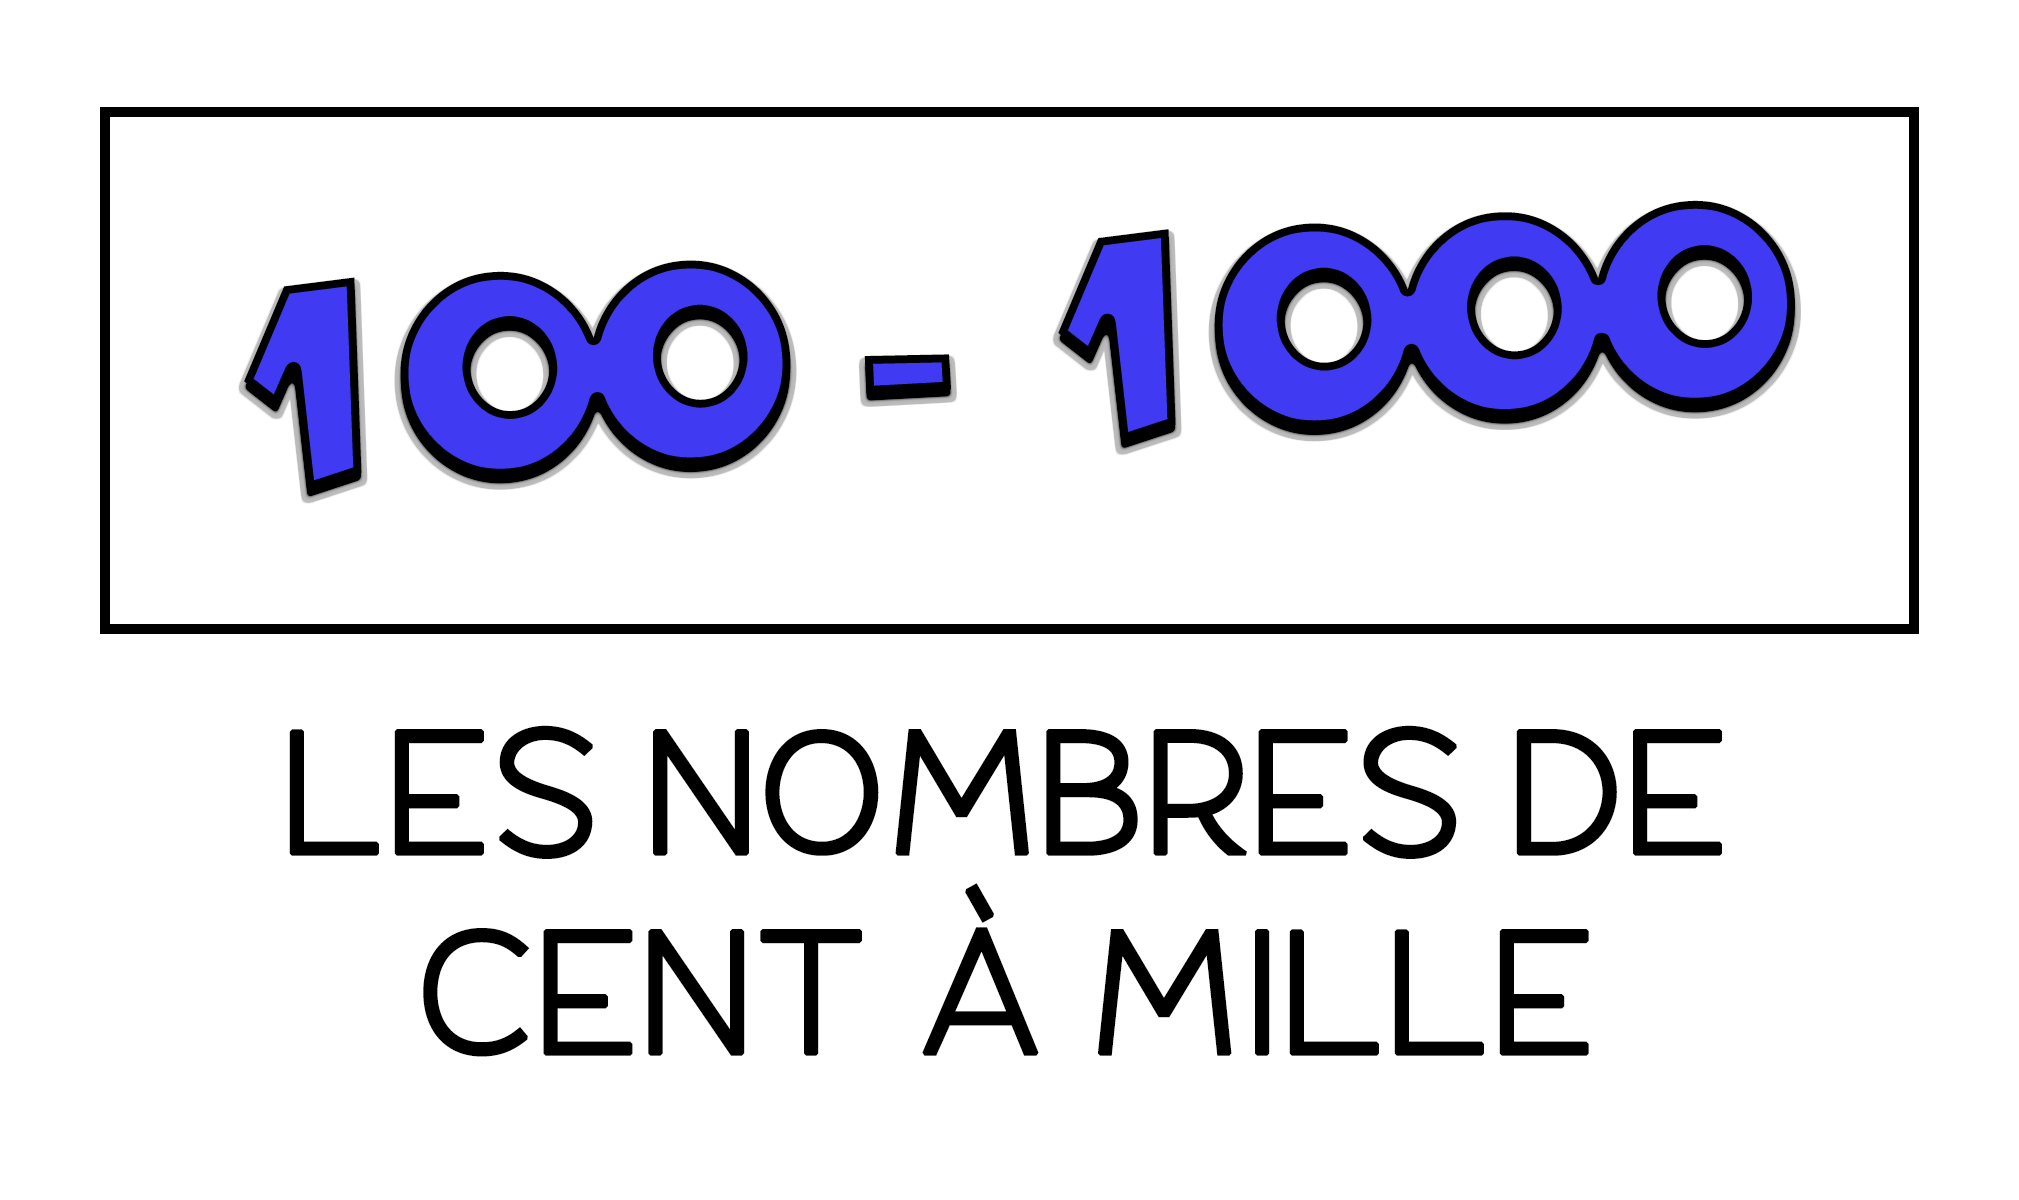 Los números de 100 a 1000 en francés